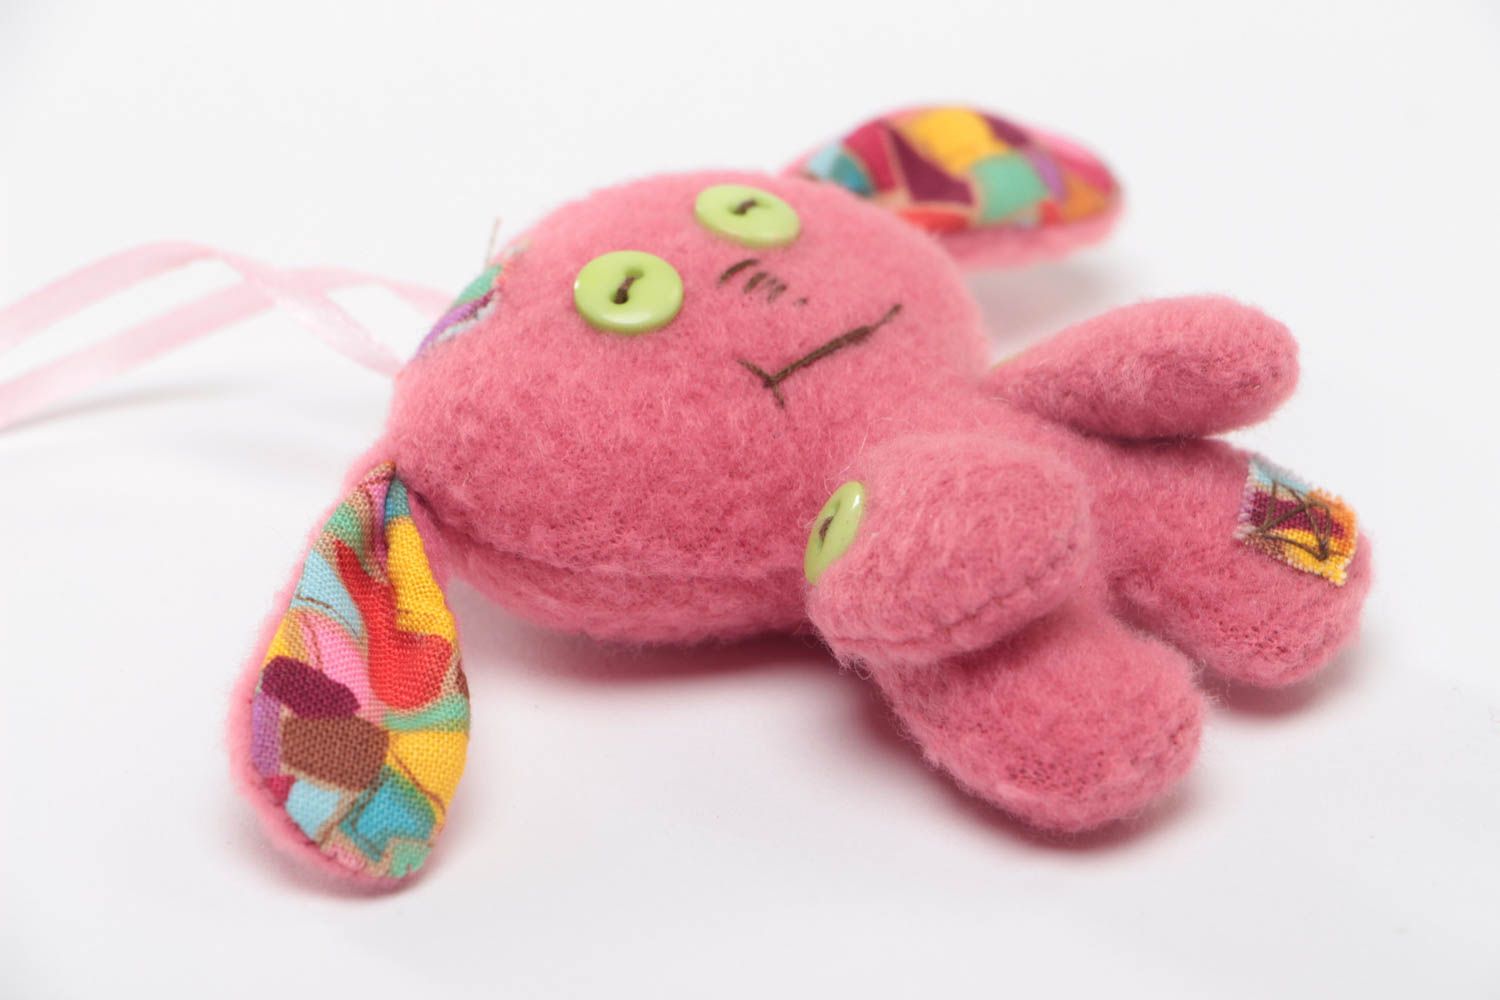 Мягка интерьерная подвеска игрушка с петелькой для ребенка розовая зайка хенд мейд фото 3